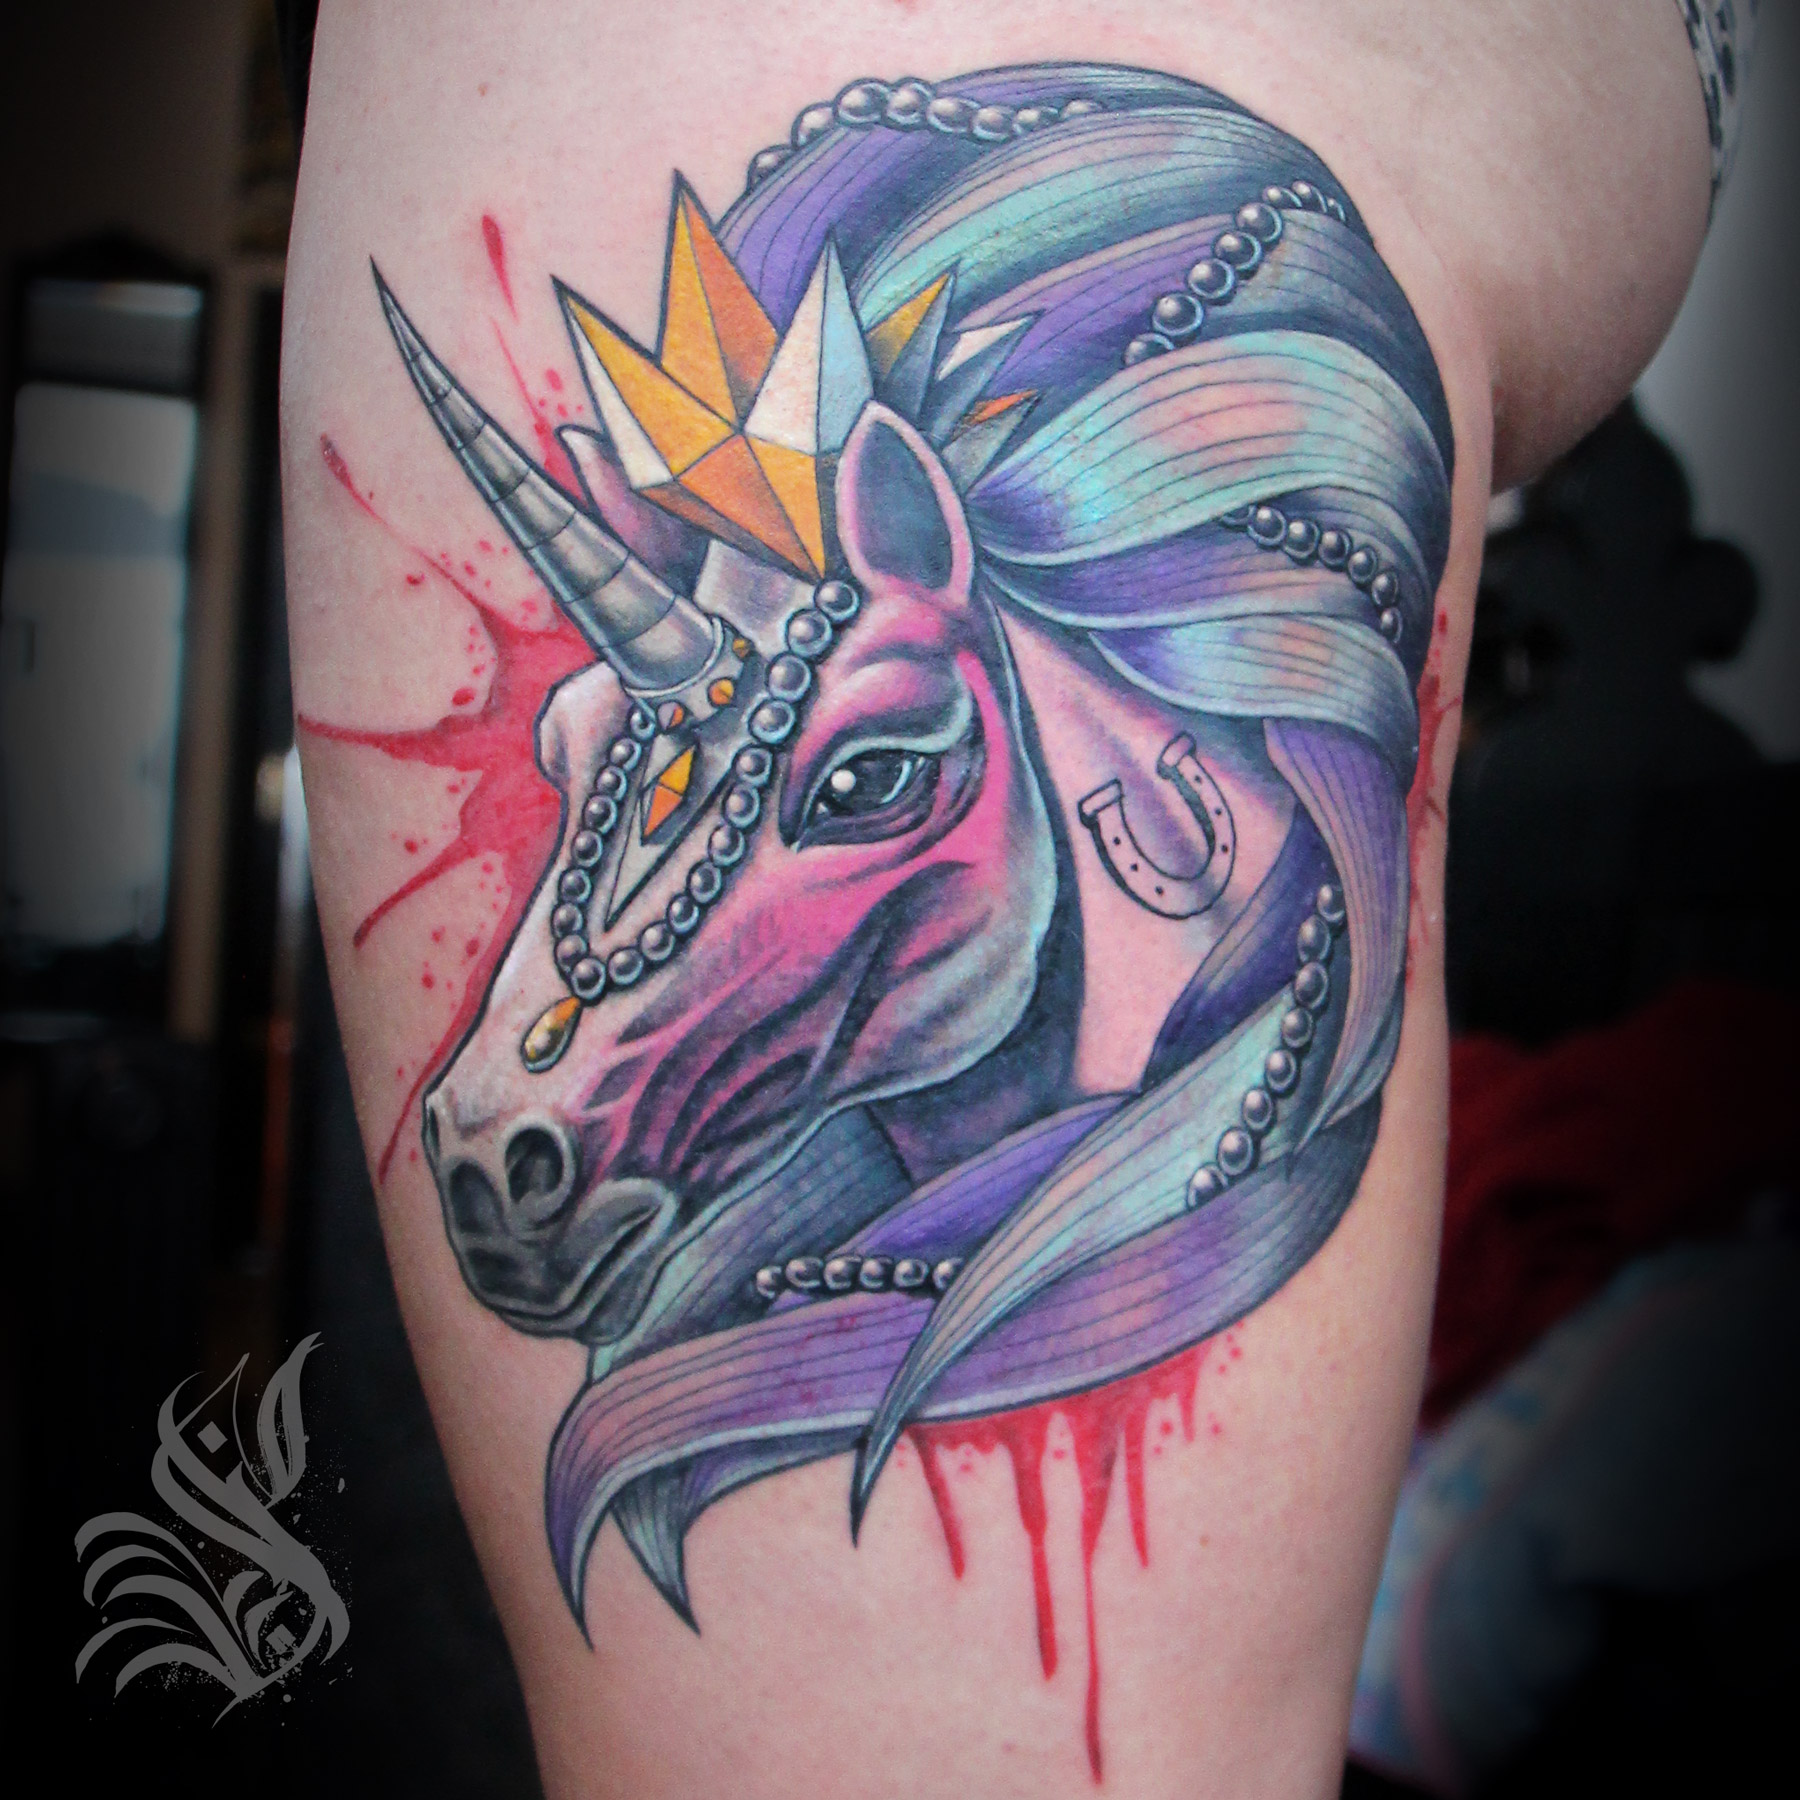 mister-sorn-unicorn-smb-tattoo-brighton.jpg